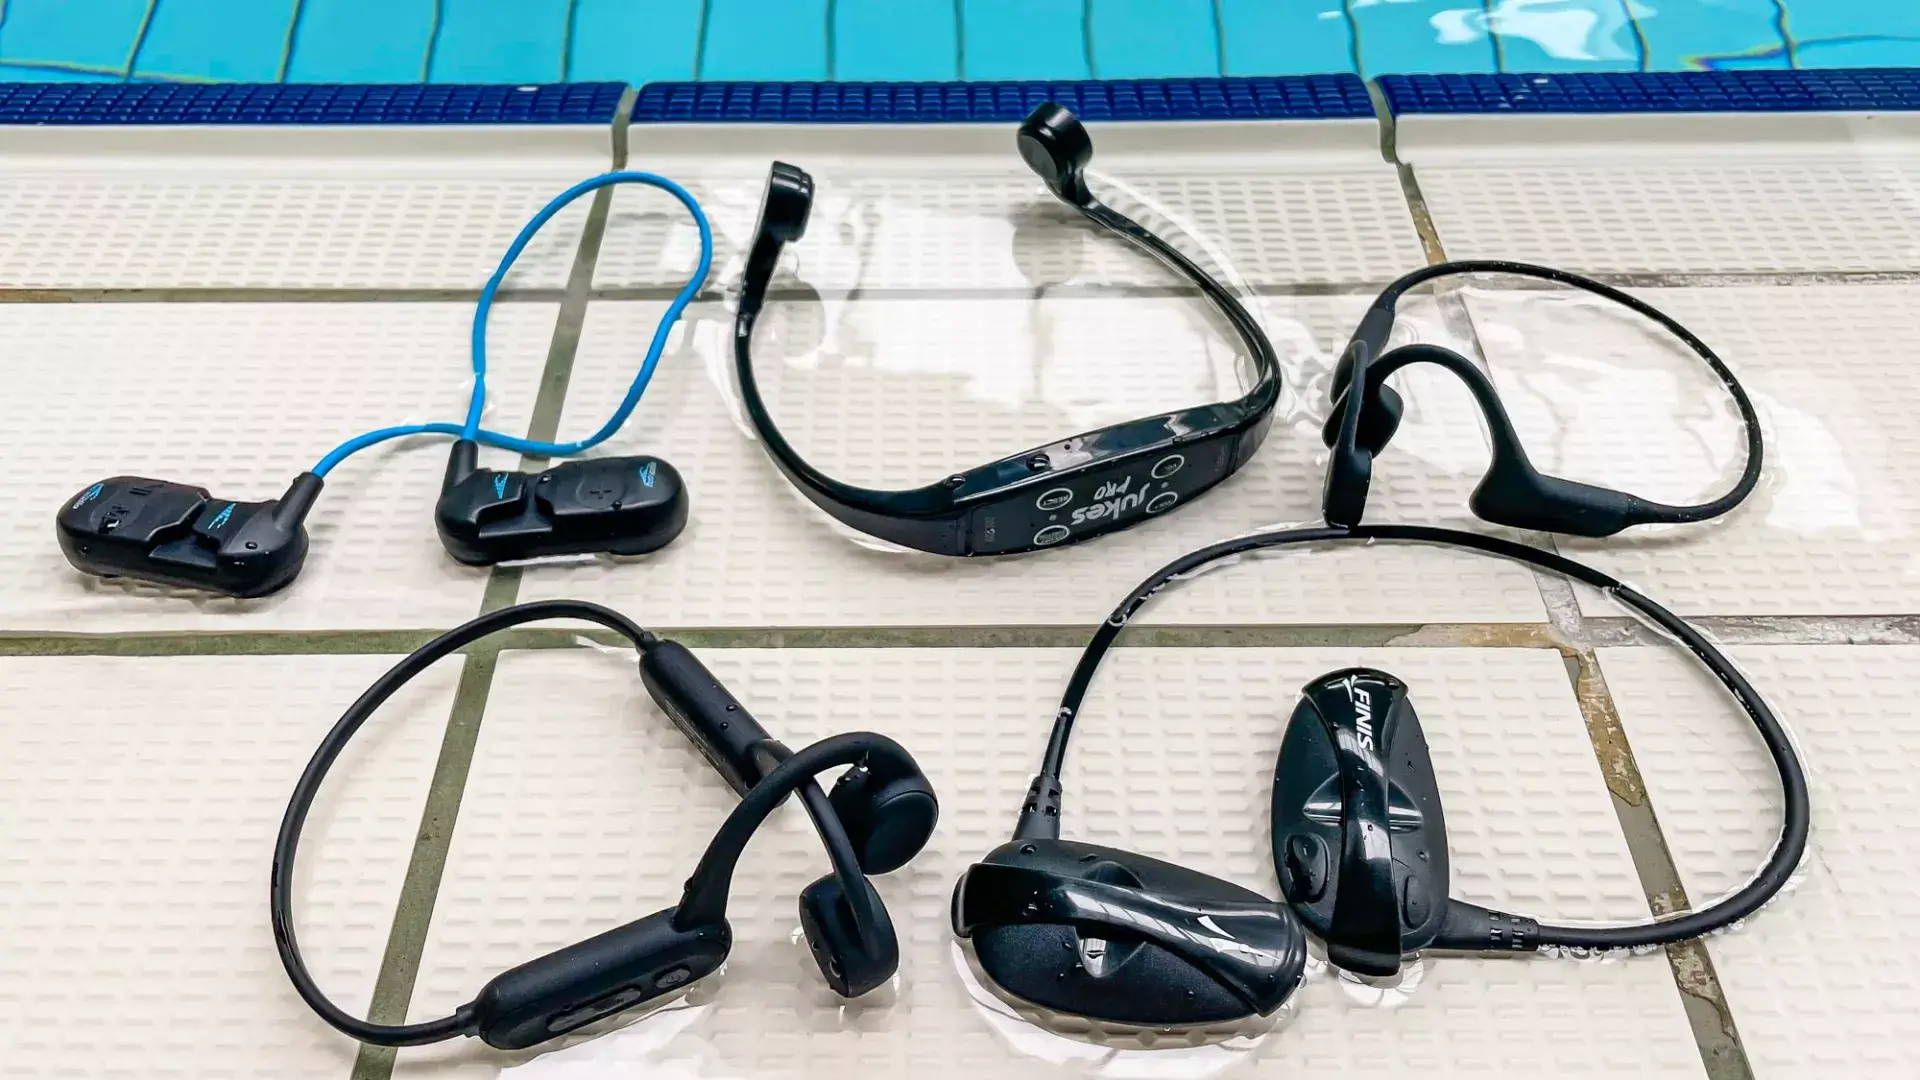 물이 있는 수영장 바닥에 놓인 여러개의 방수 이어폰